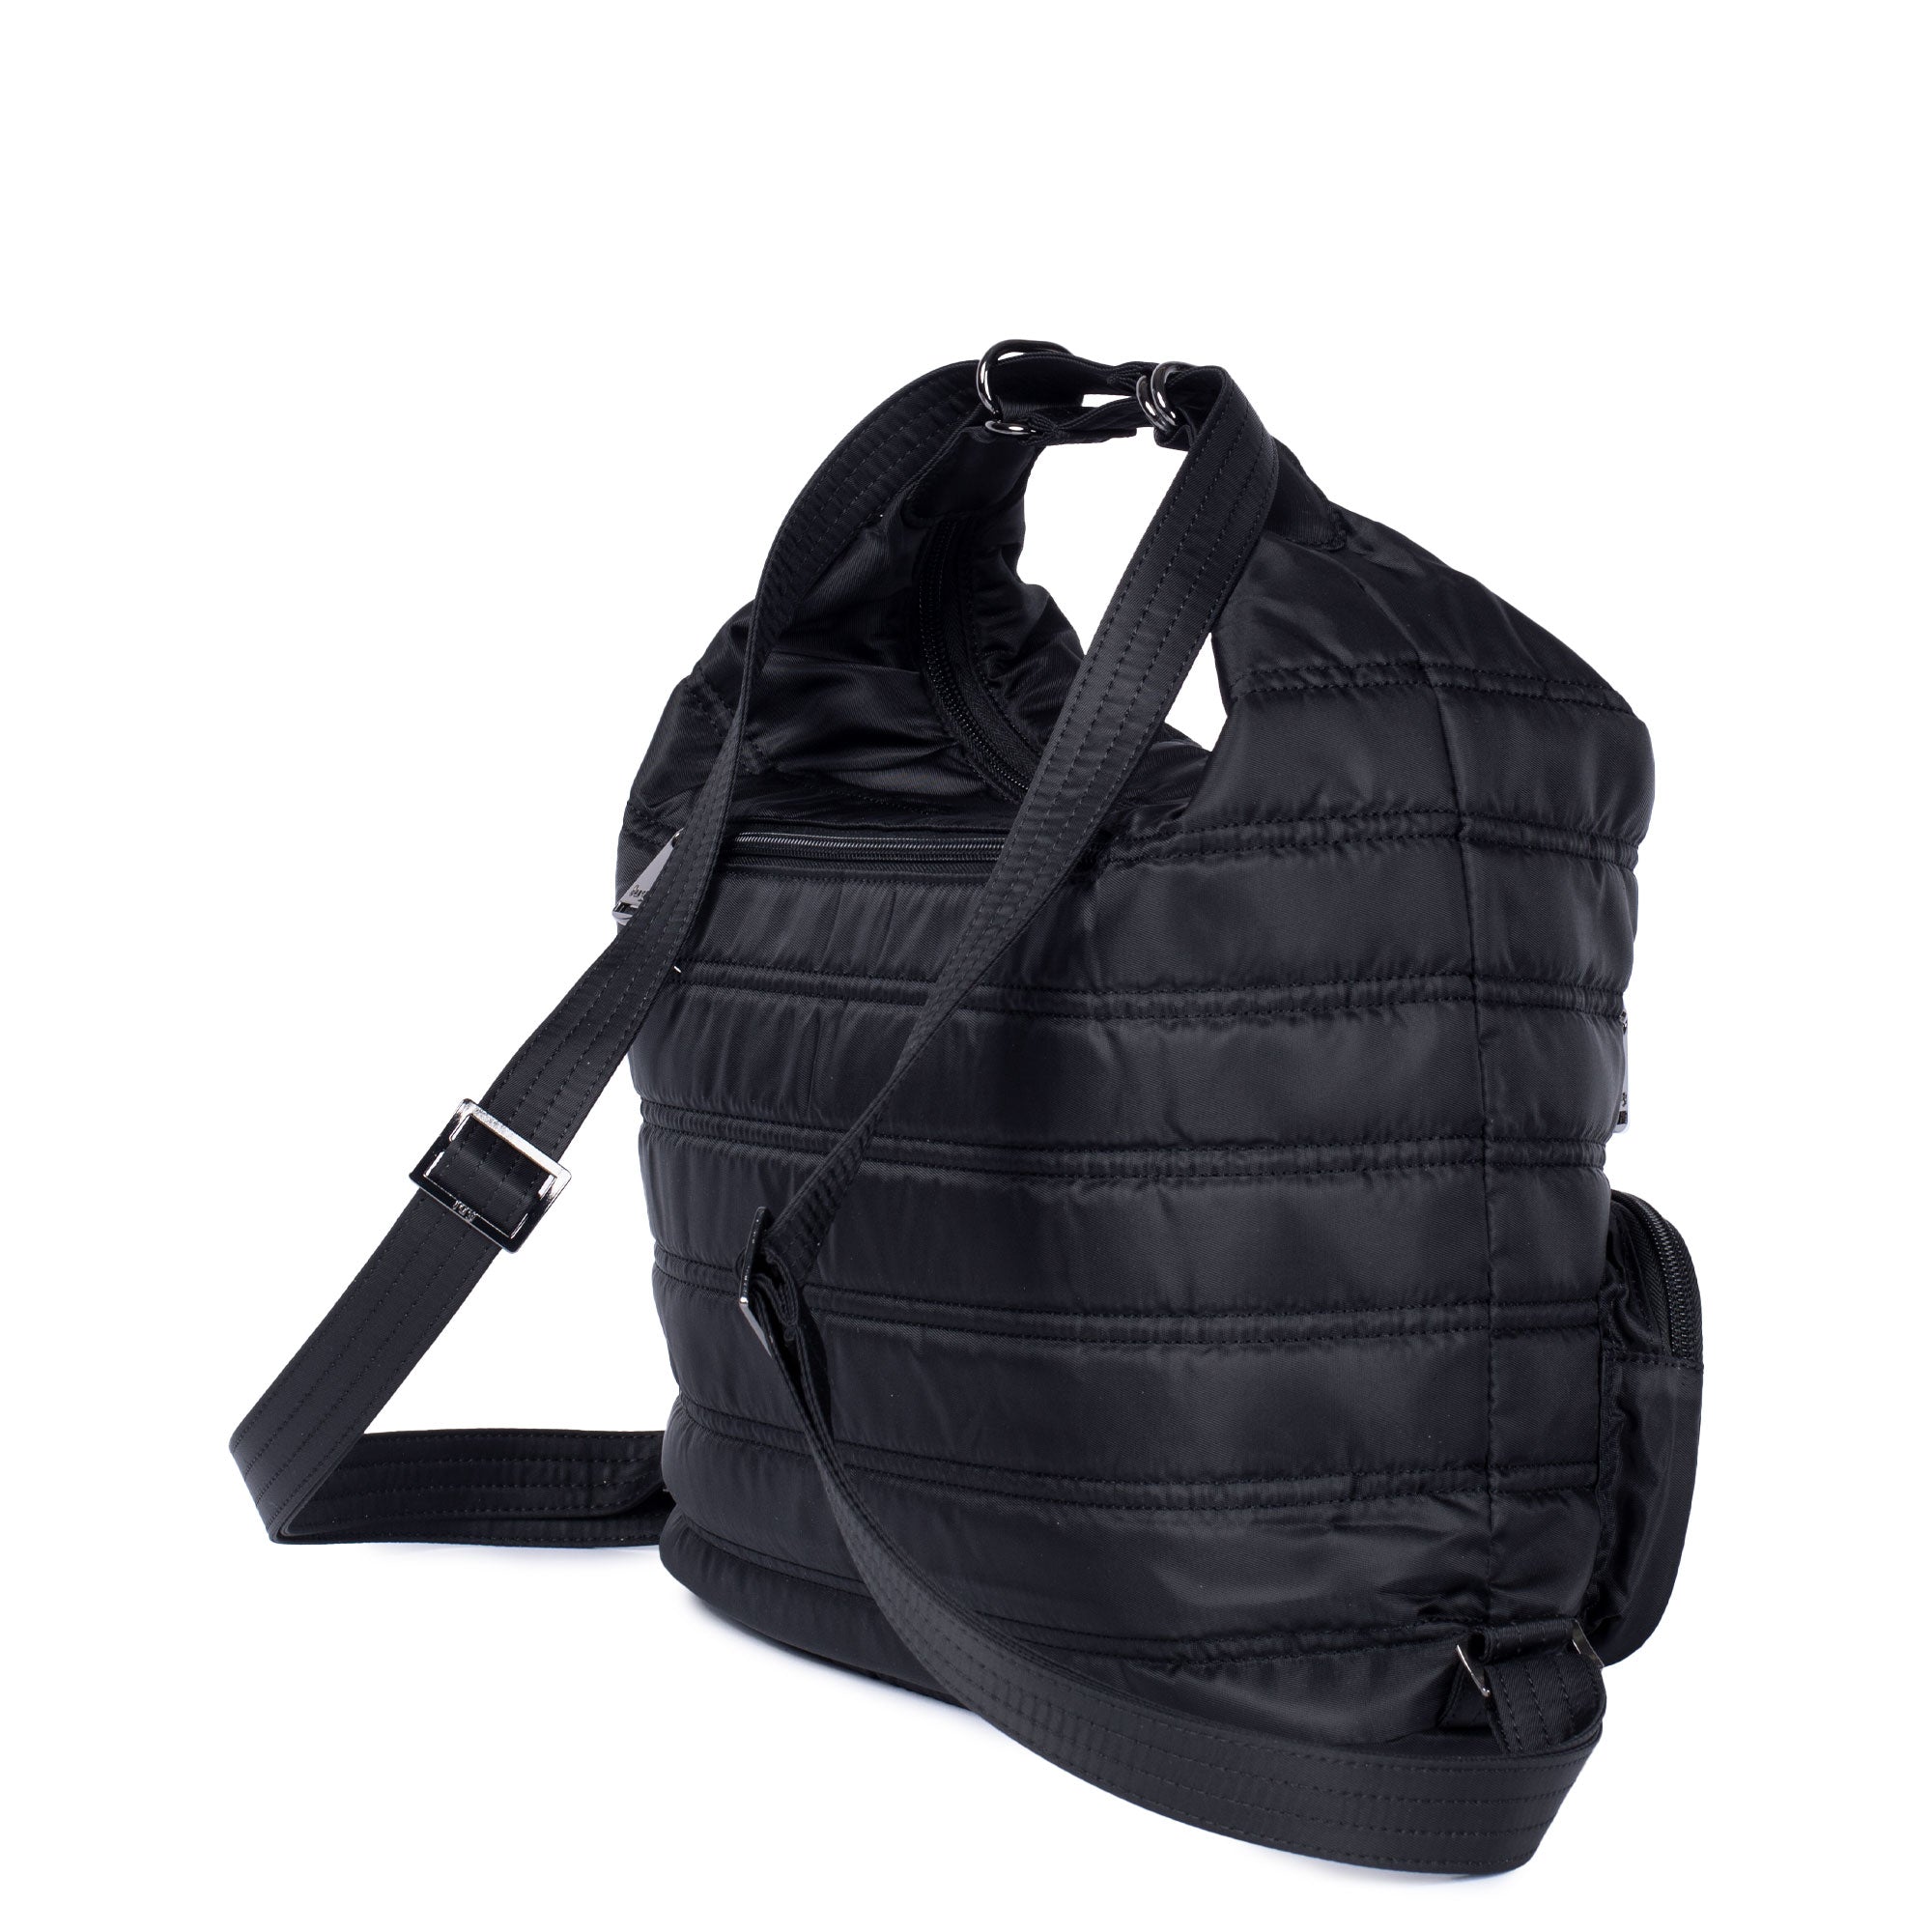 Zipliner Convertible Shoulder Bag/Backpack- Midnight Black